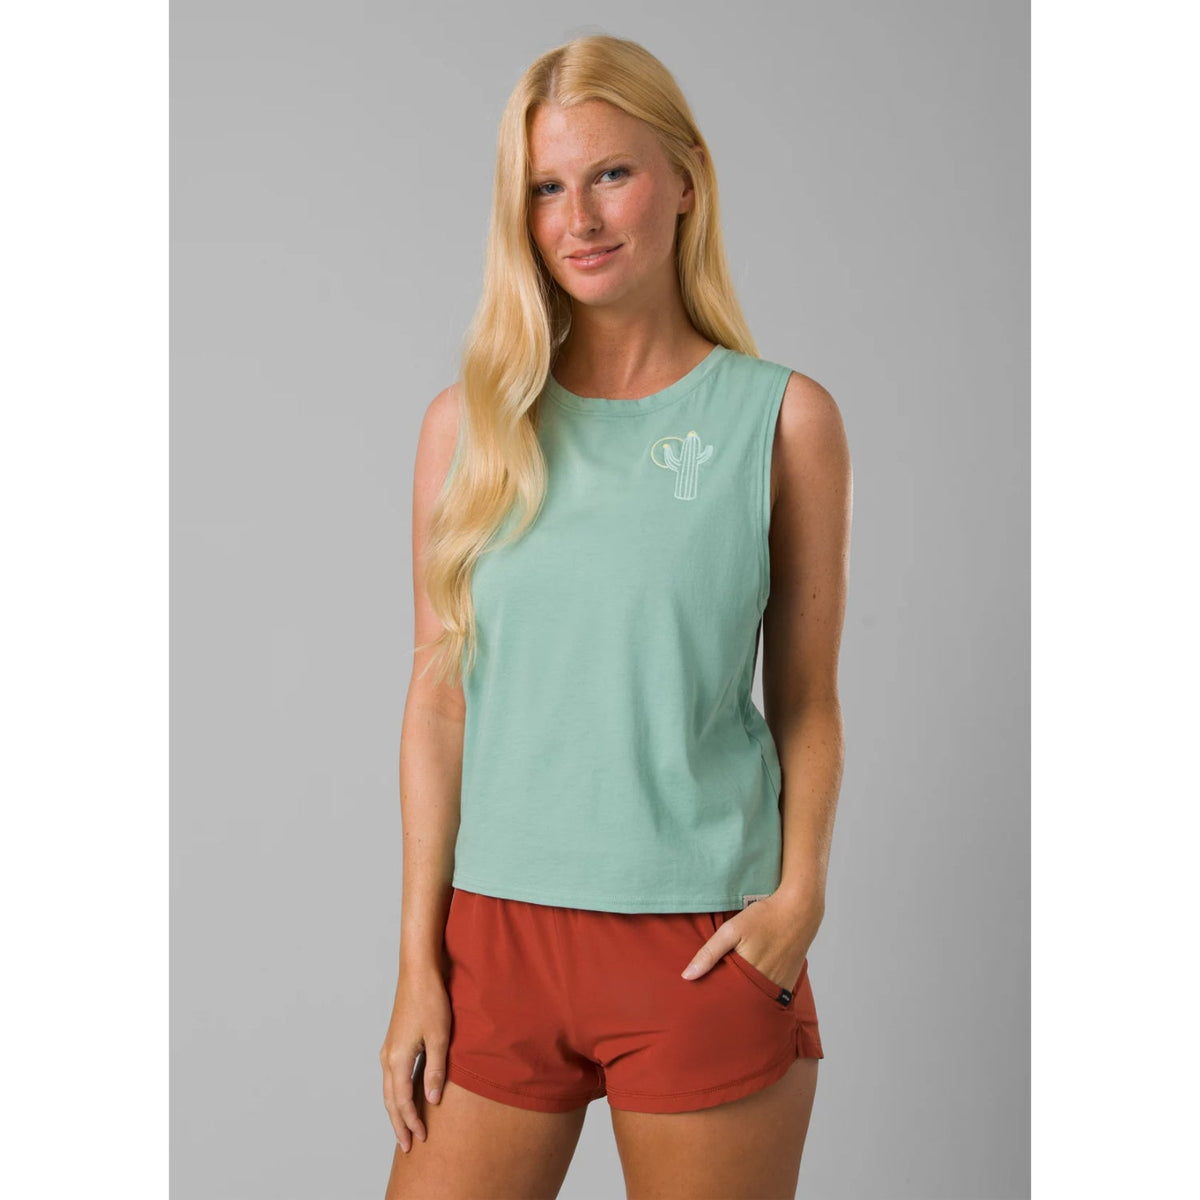 Prana Organic Graphic Sleeveless T-Shirt - Light Cove Cactus - Women&#39;s